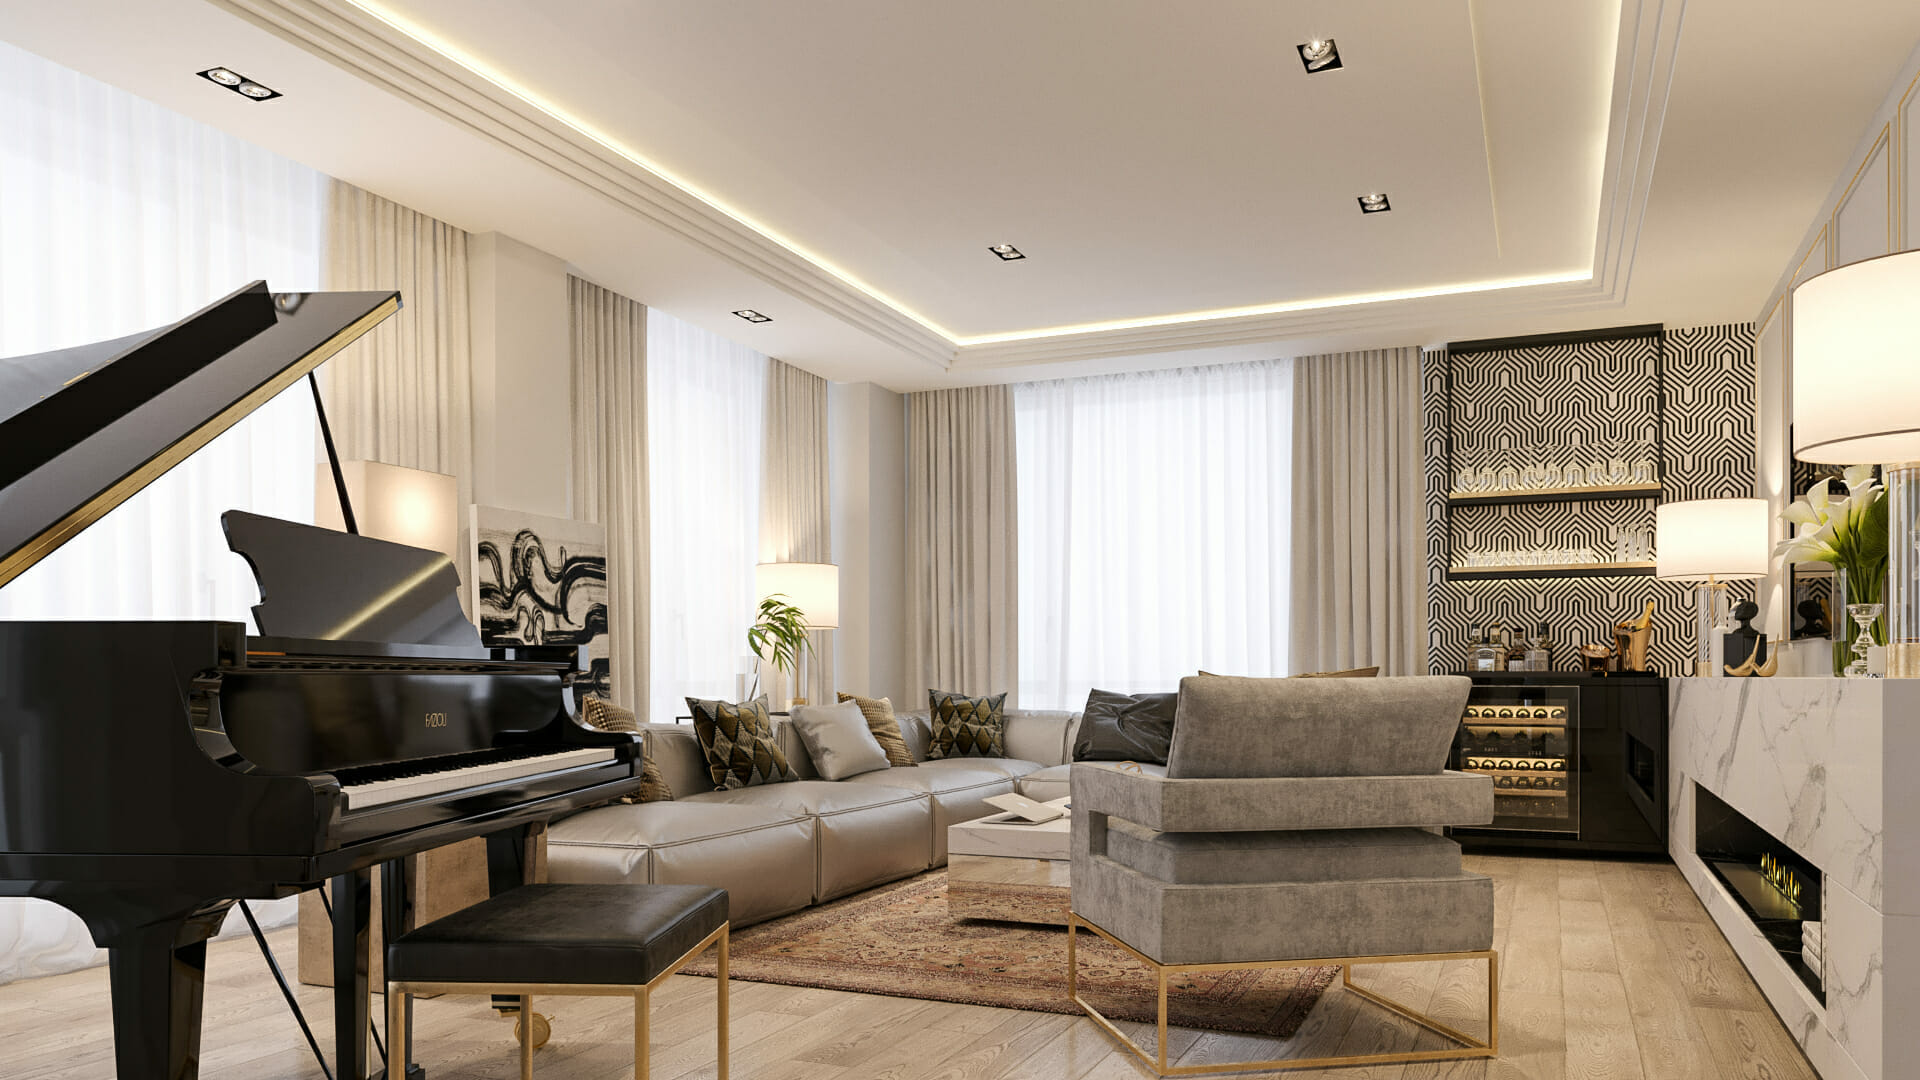 Chất liệu đồ nội thất khi thiết kế phong cách luxury thường khá cao cấp